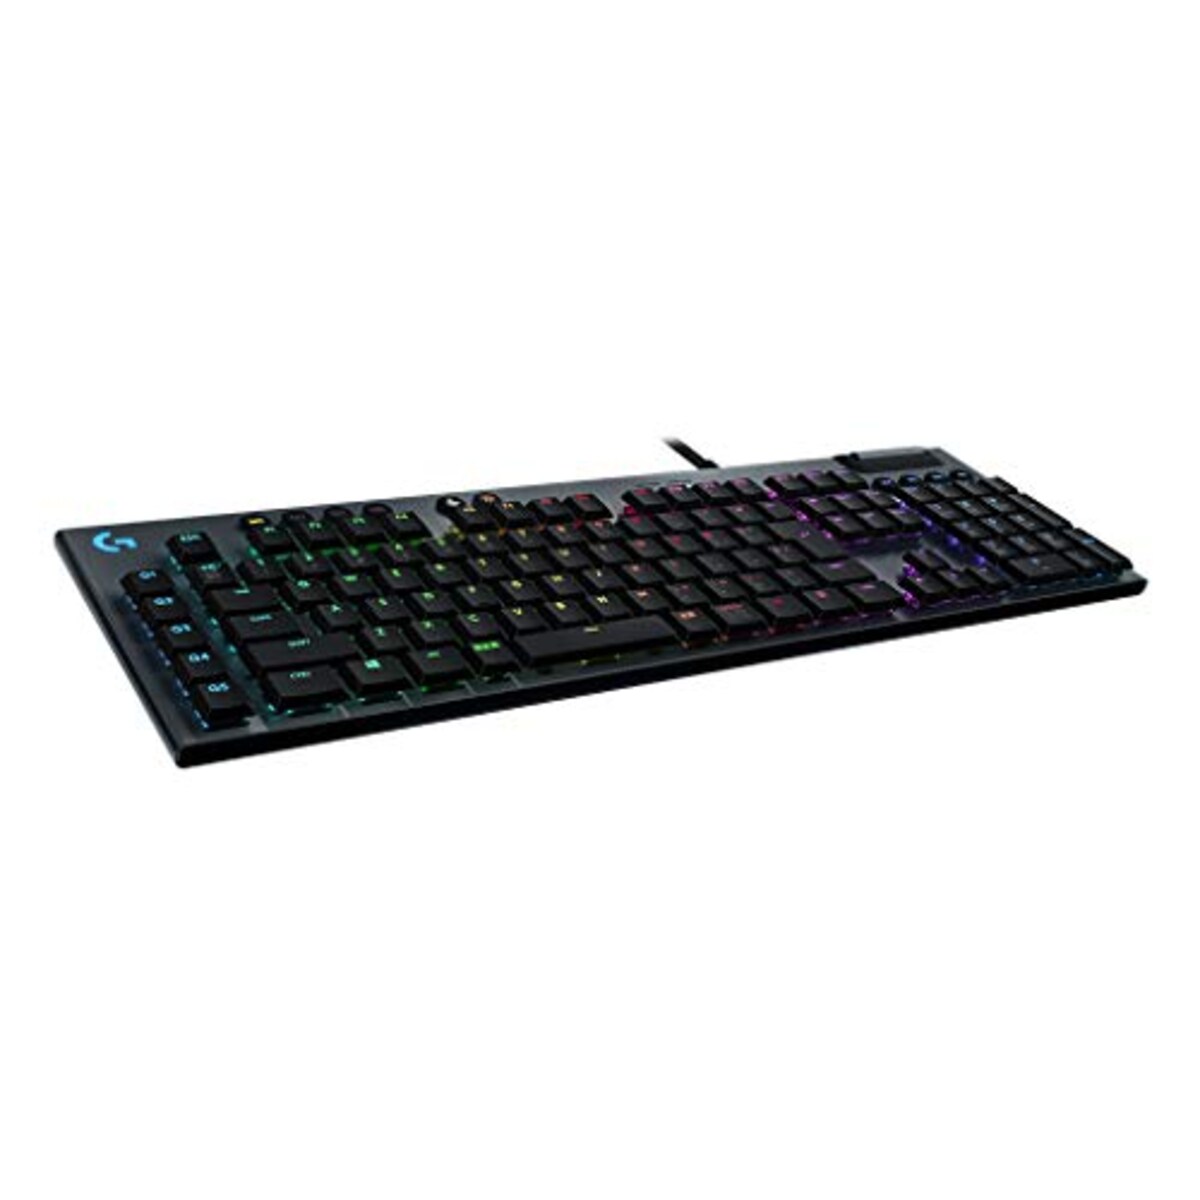 G813 LIGHTSYNC RGB Mechanical Gaming Keyboards